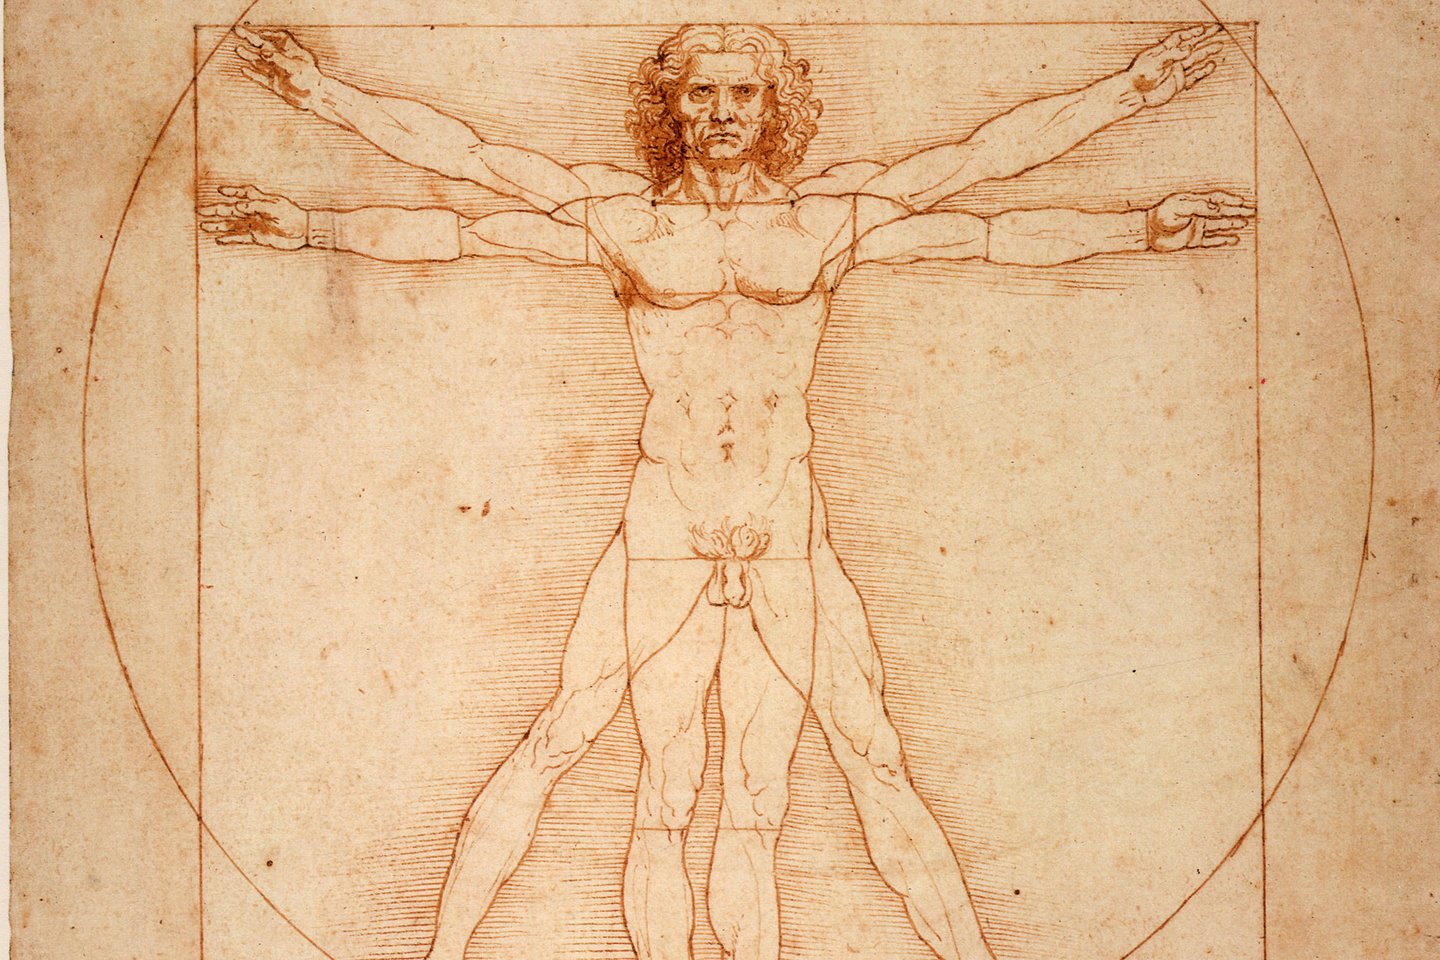 Garsusiojo Leonardo da Vinci piešinio „Vitruvijaus žmogus“ (L'Uomo Vitruviano) fragmentas.<br> Wikimedia nuotr.